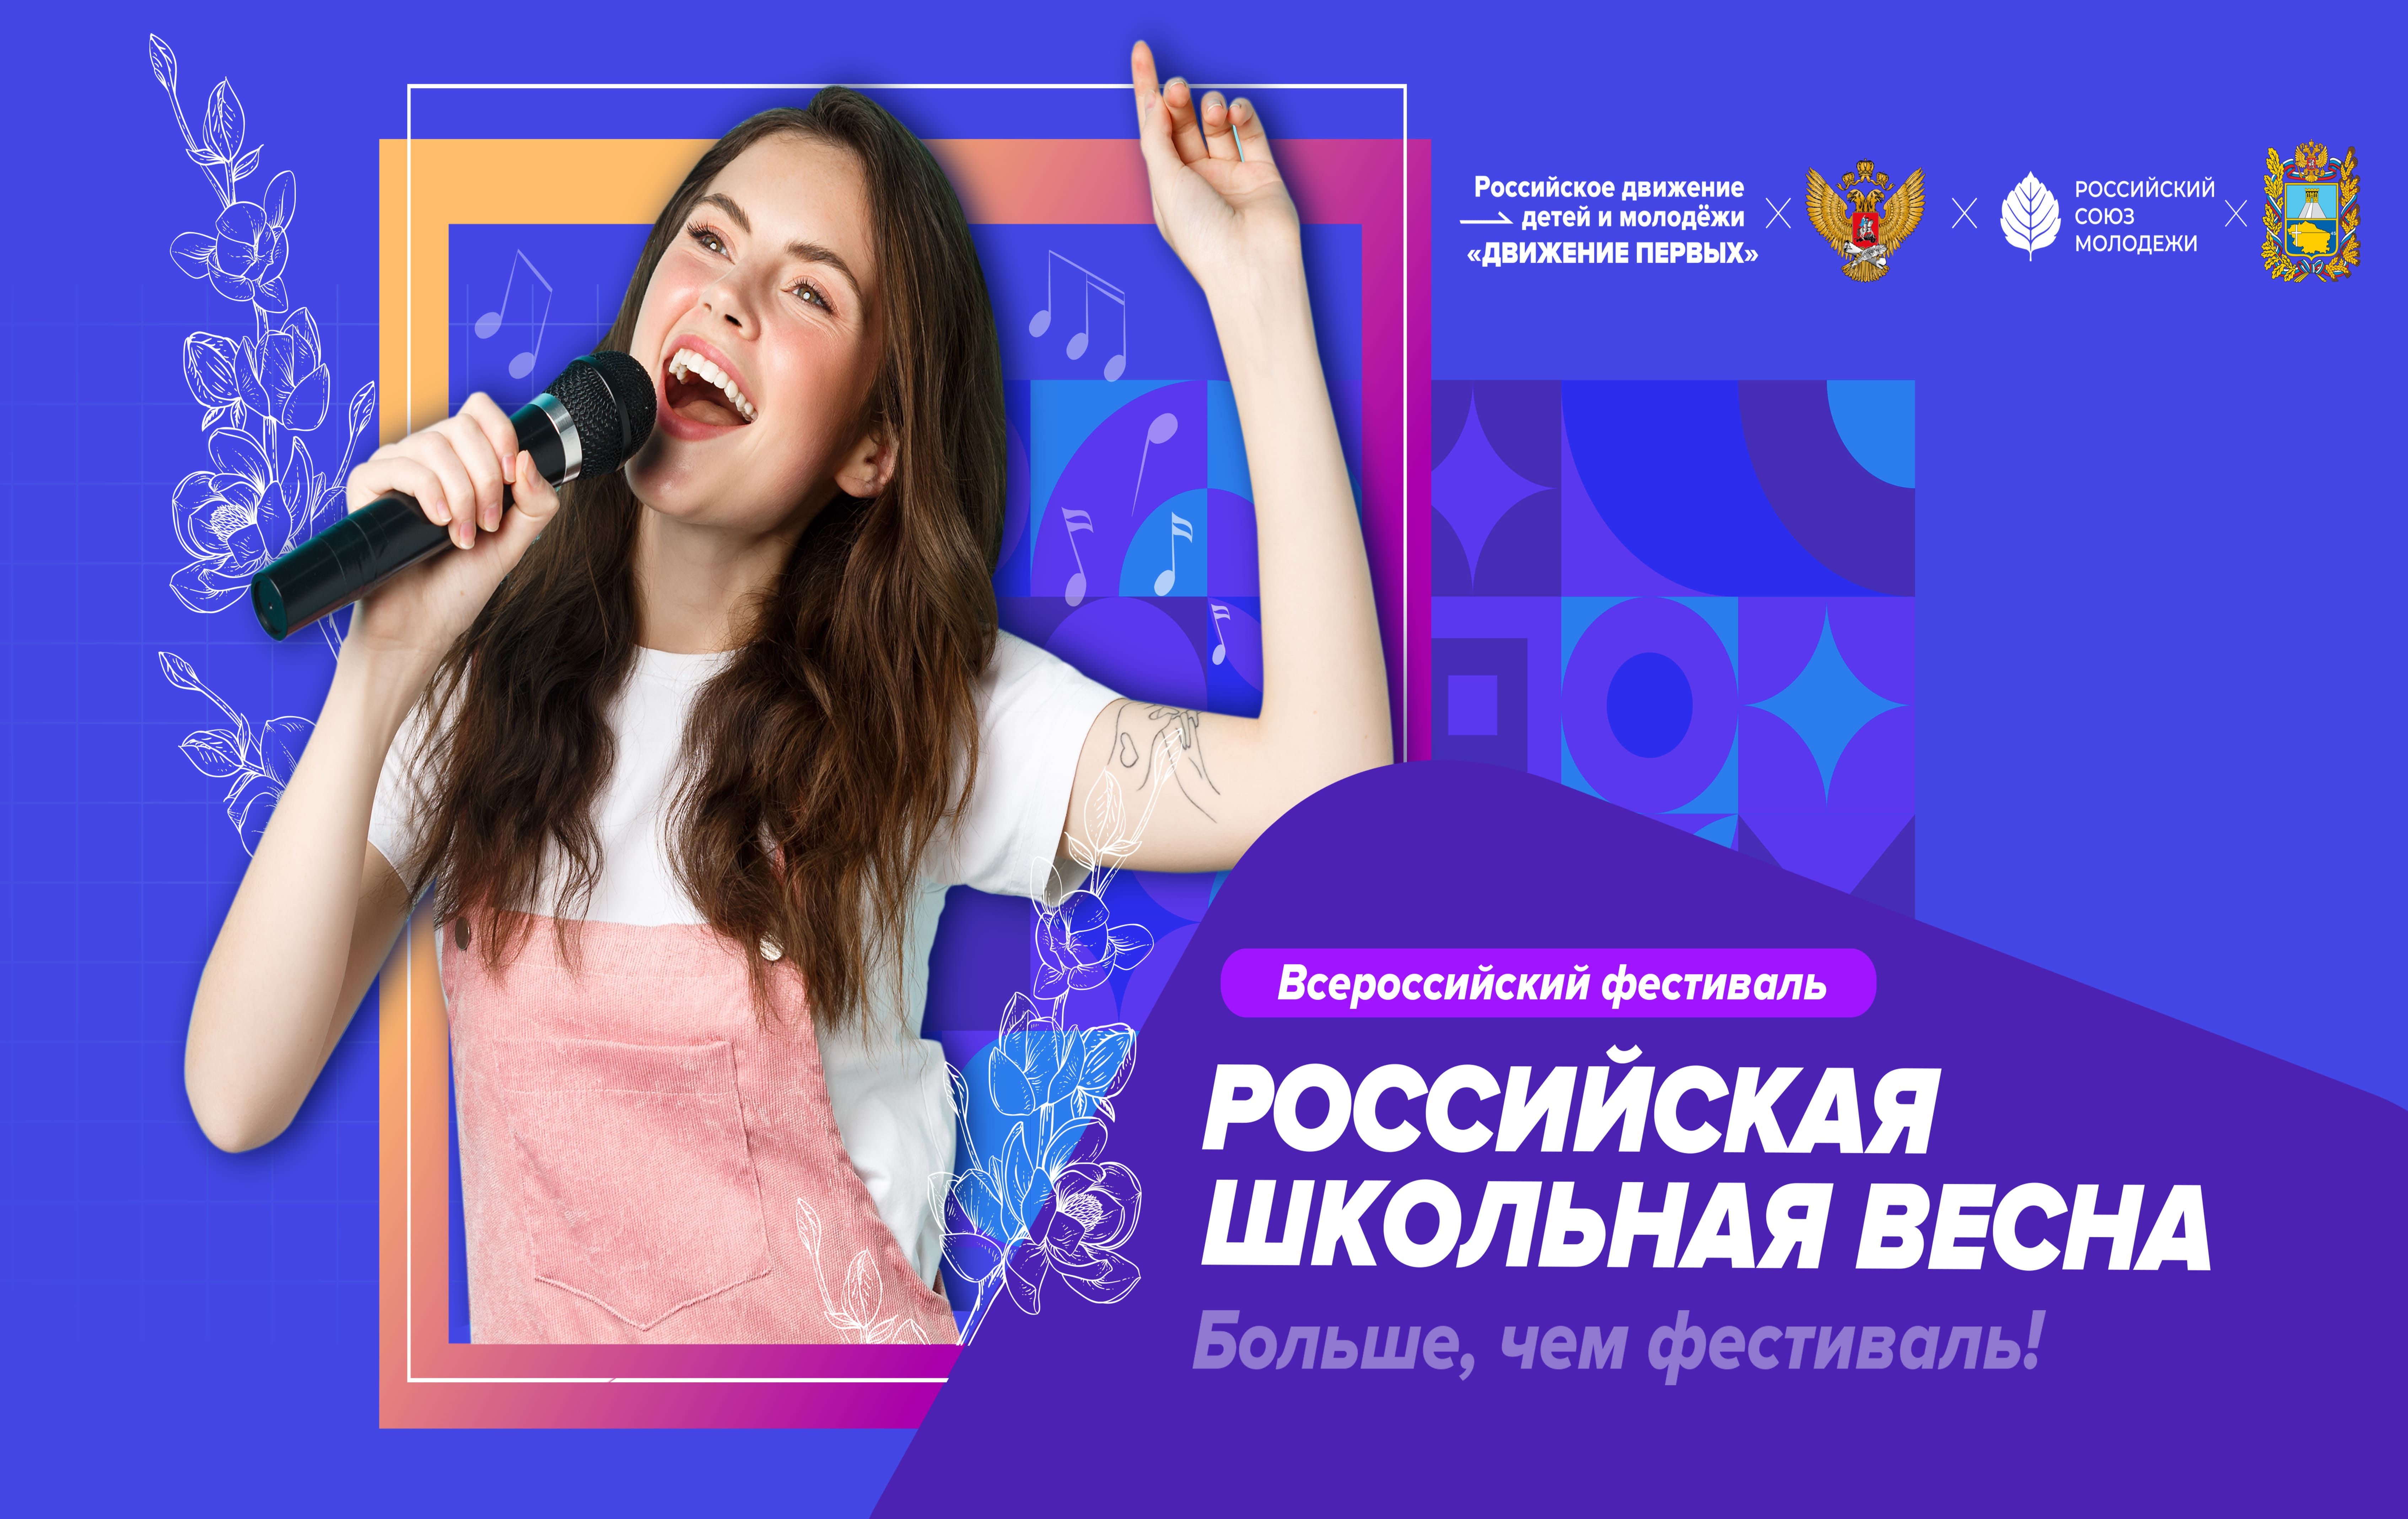 Всероссийский фестиваль «Российская школьная весна».